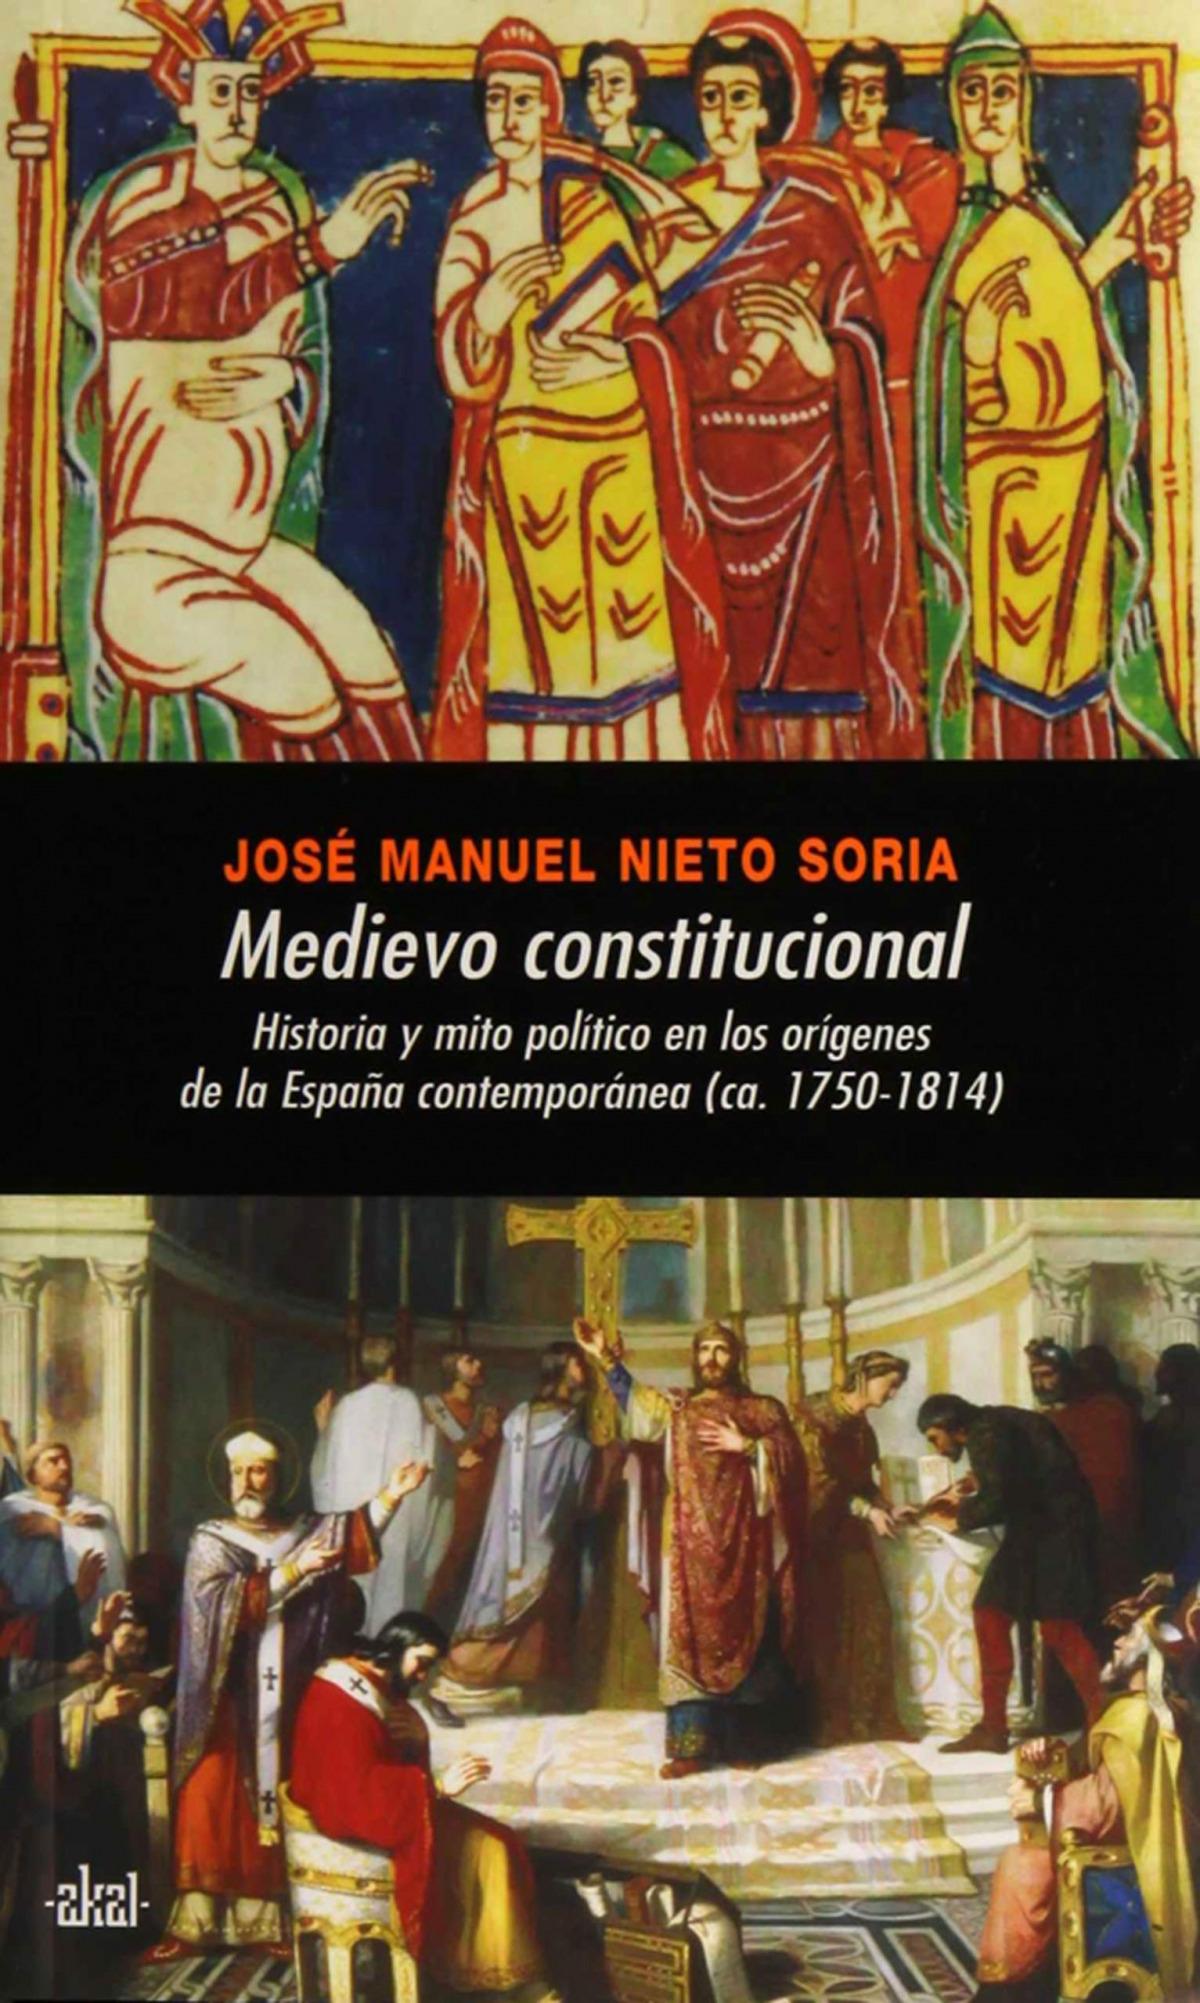 Medievo constitucional "Historia y mito político en los orígenes de la España". 